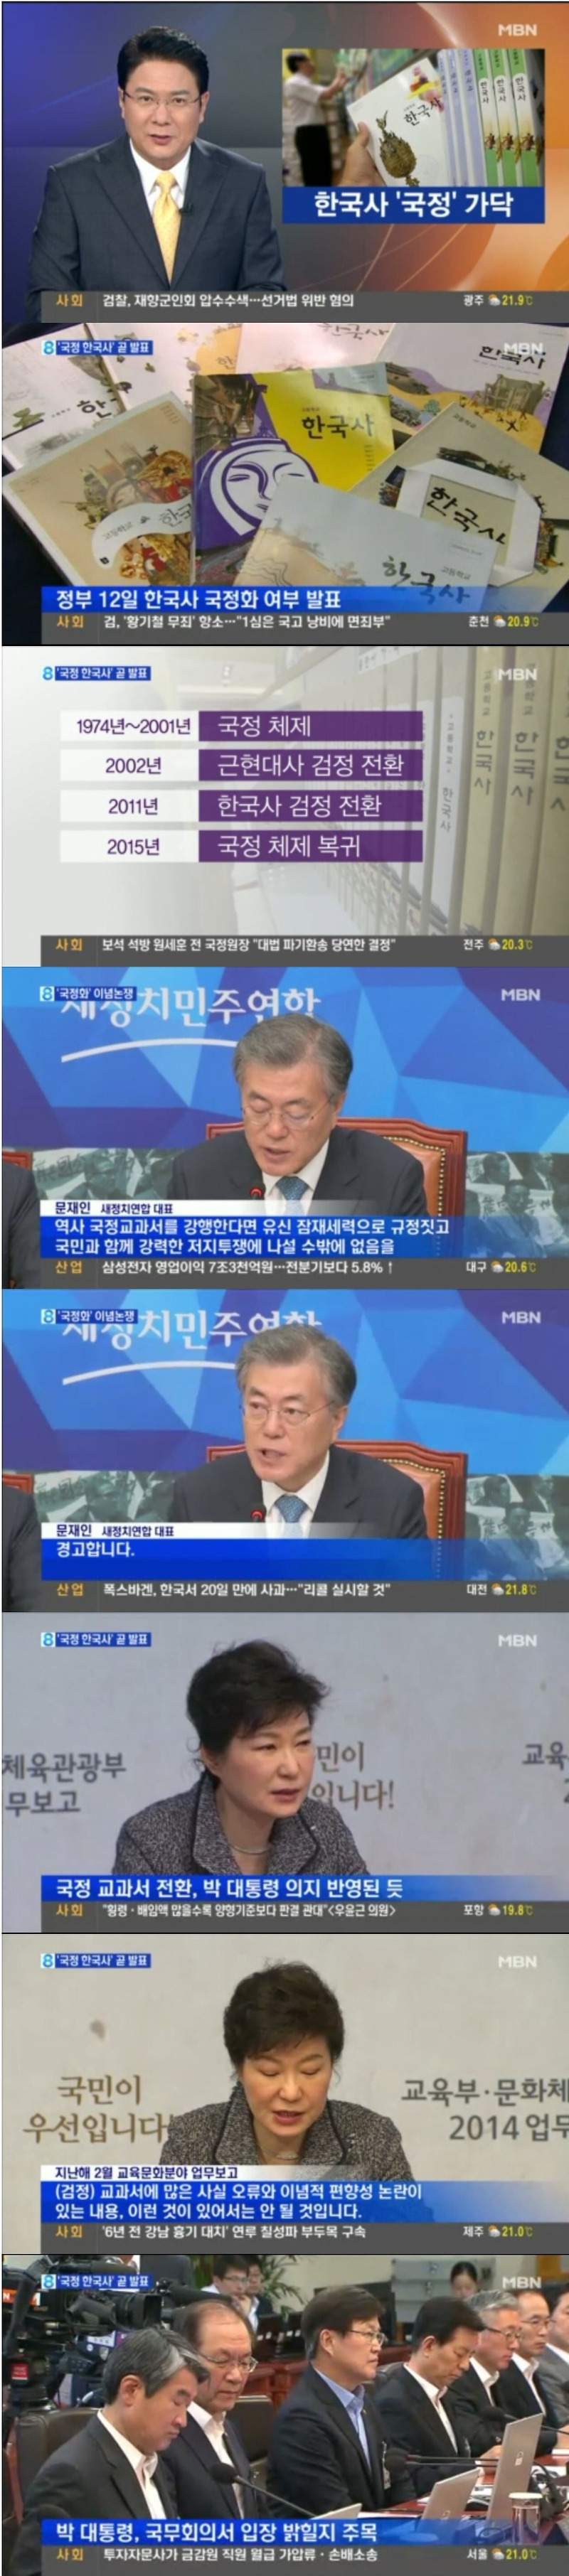 한국사 국정교과서 강행